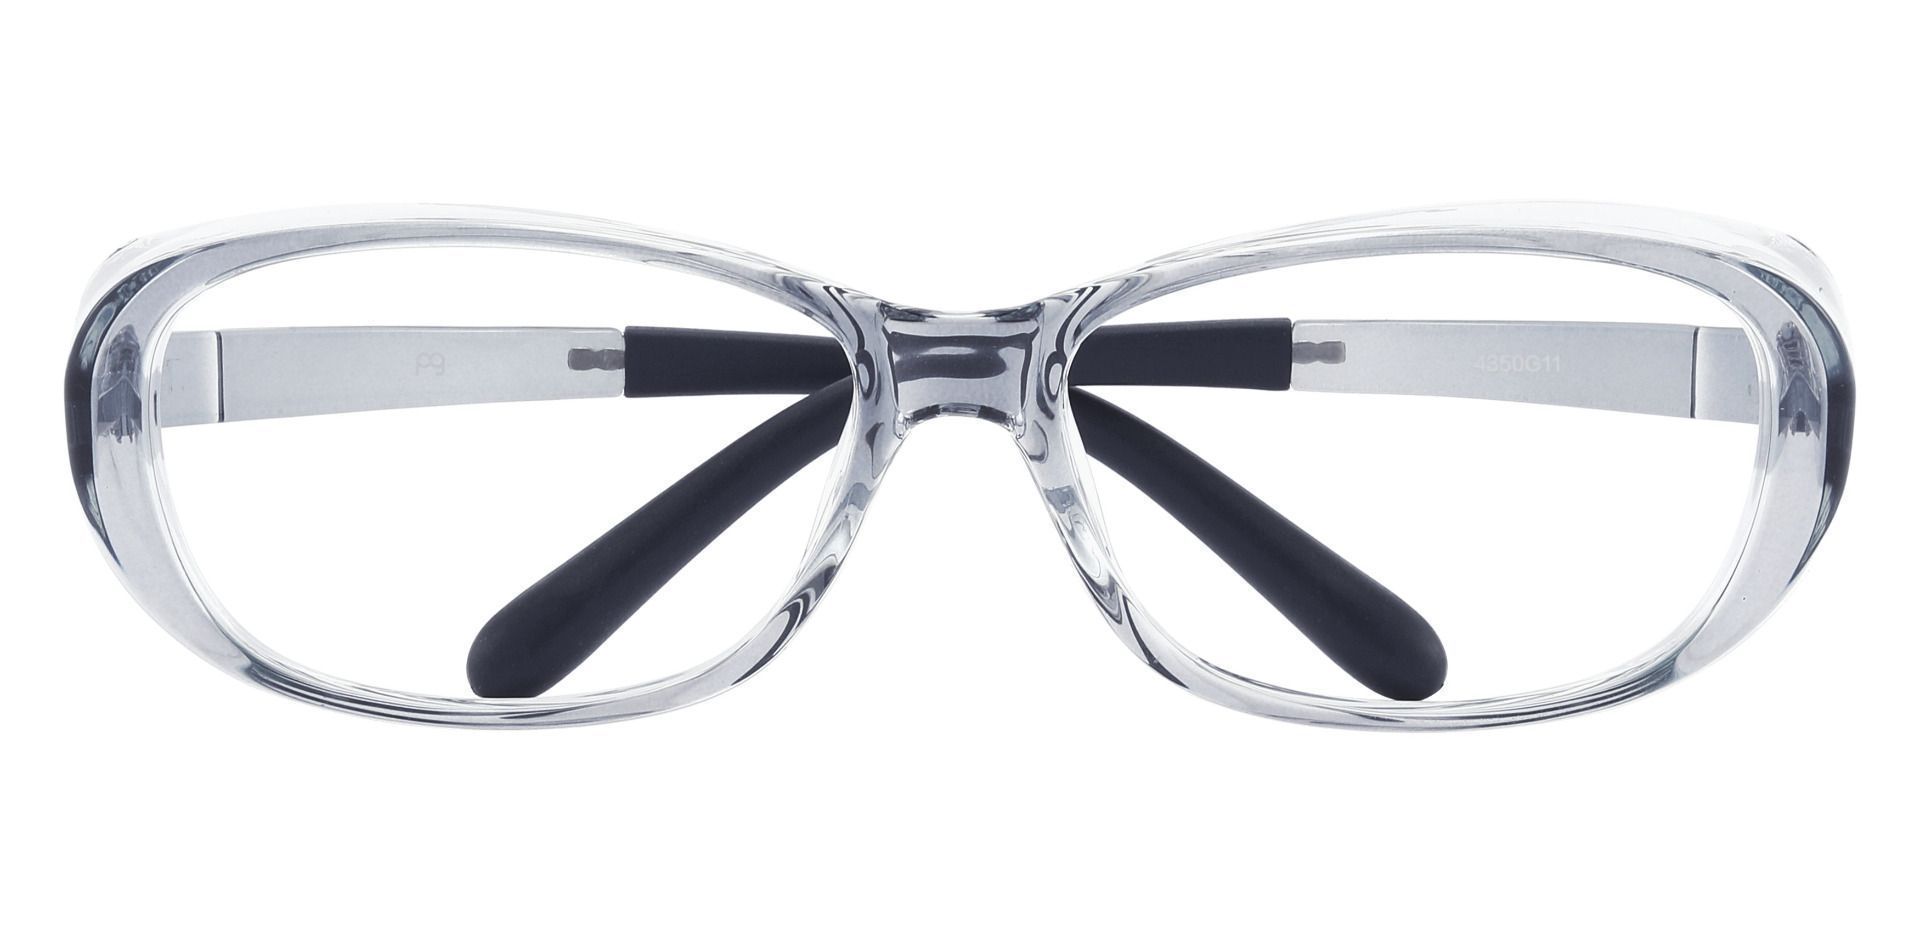 Omega Sports Goggles Prescription Glasses - Gray